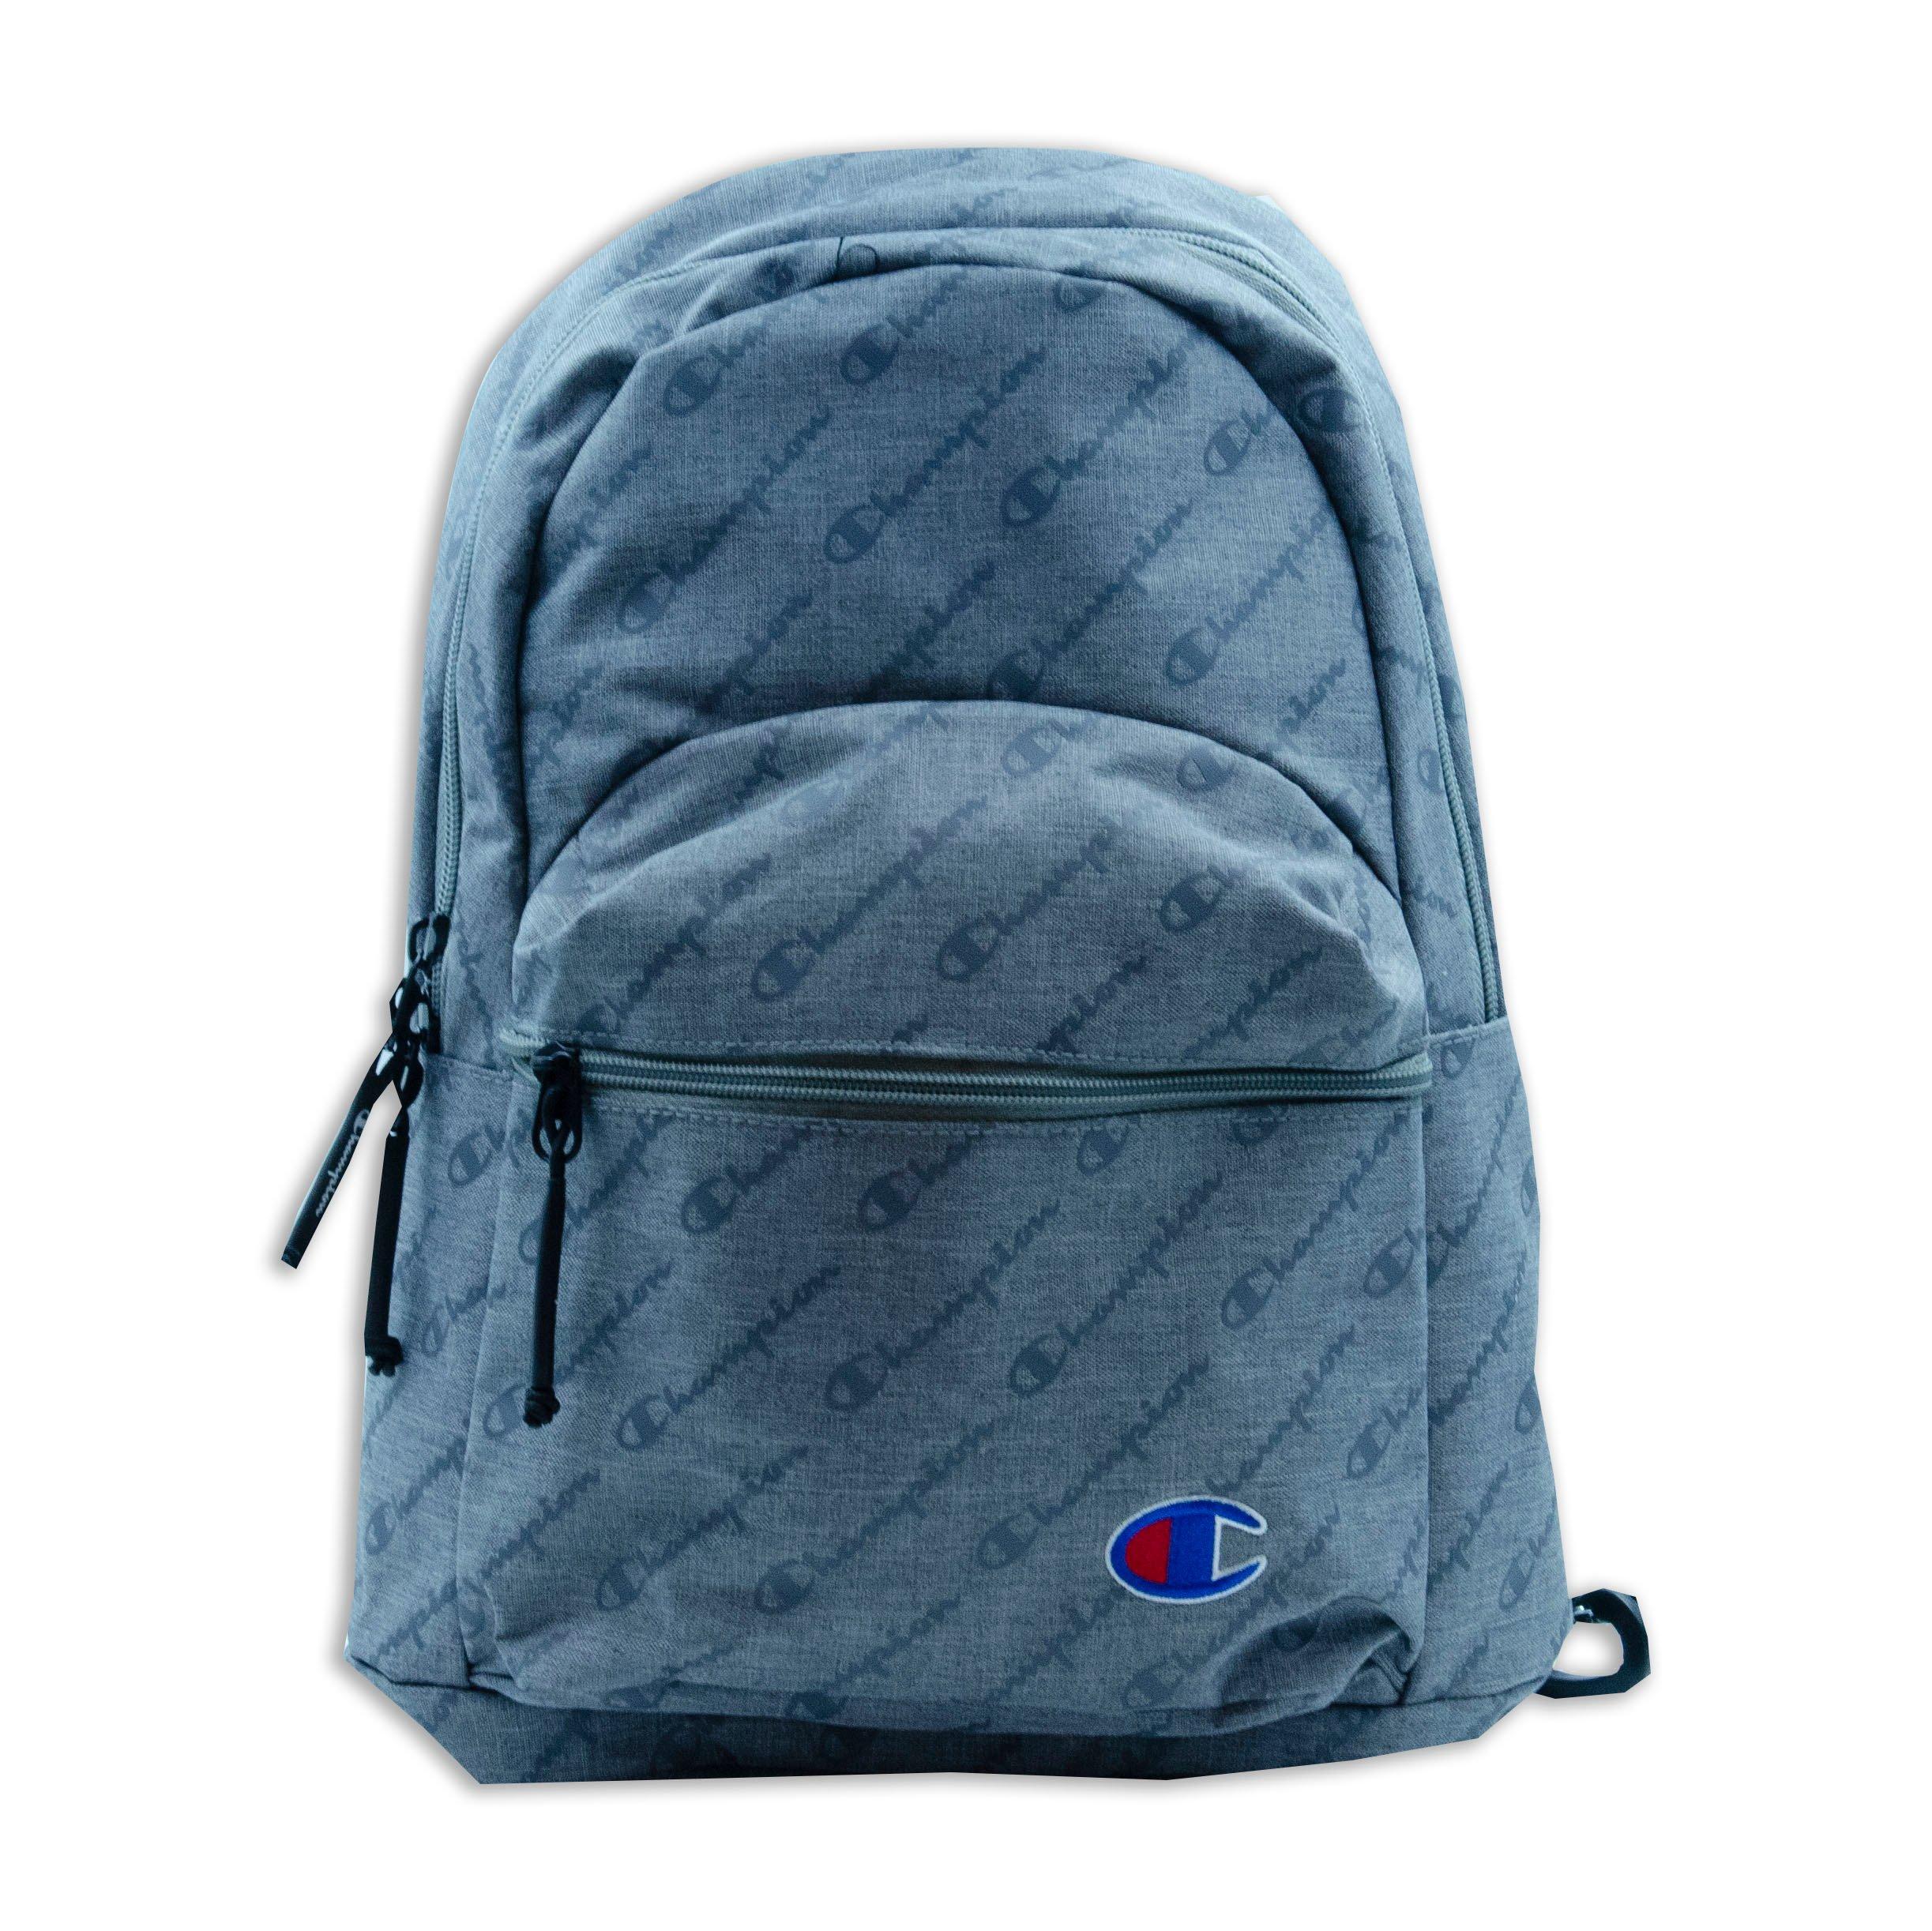 supercize backpack